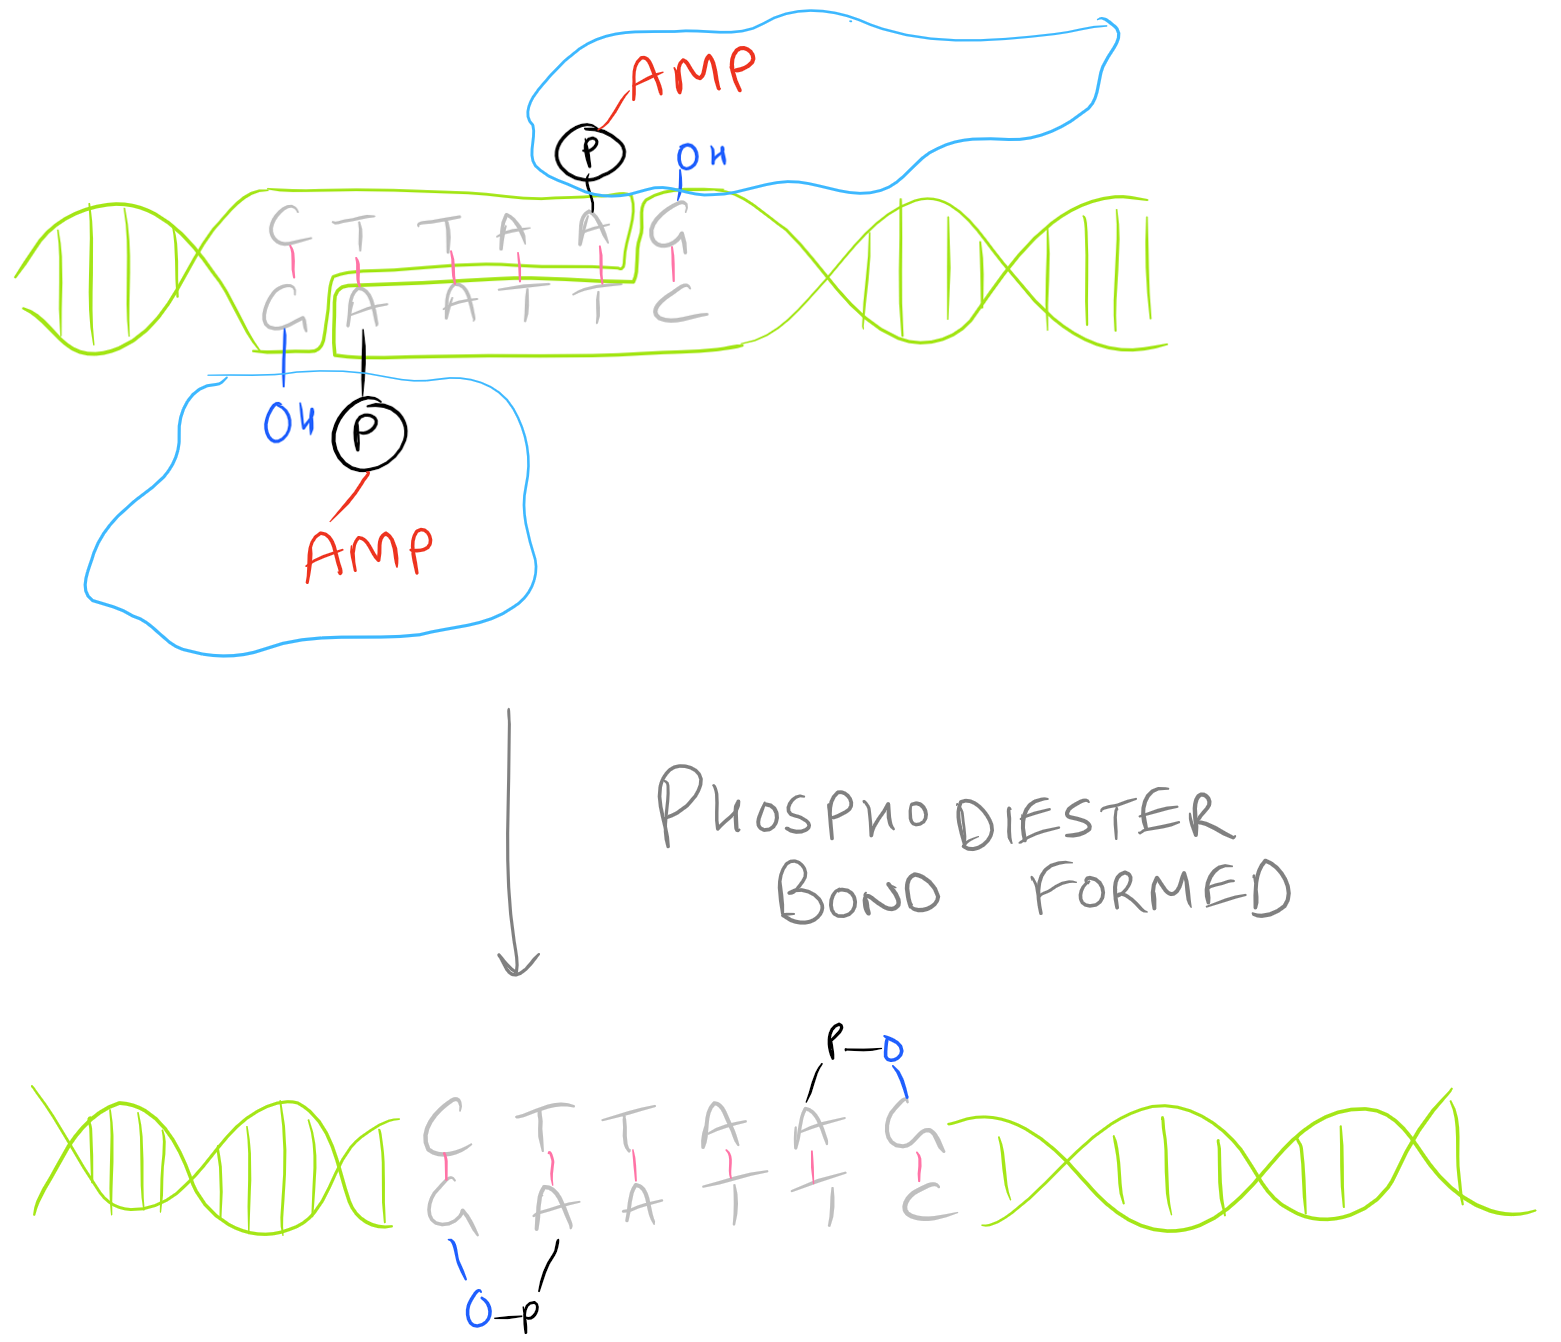 Phosphodiester Bond Formation during Ligation